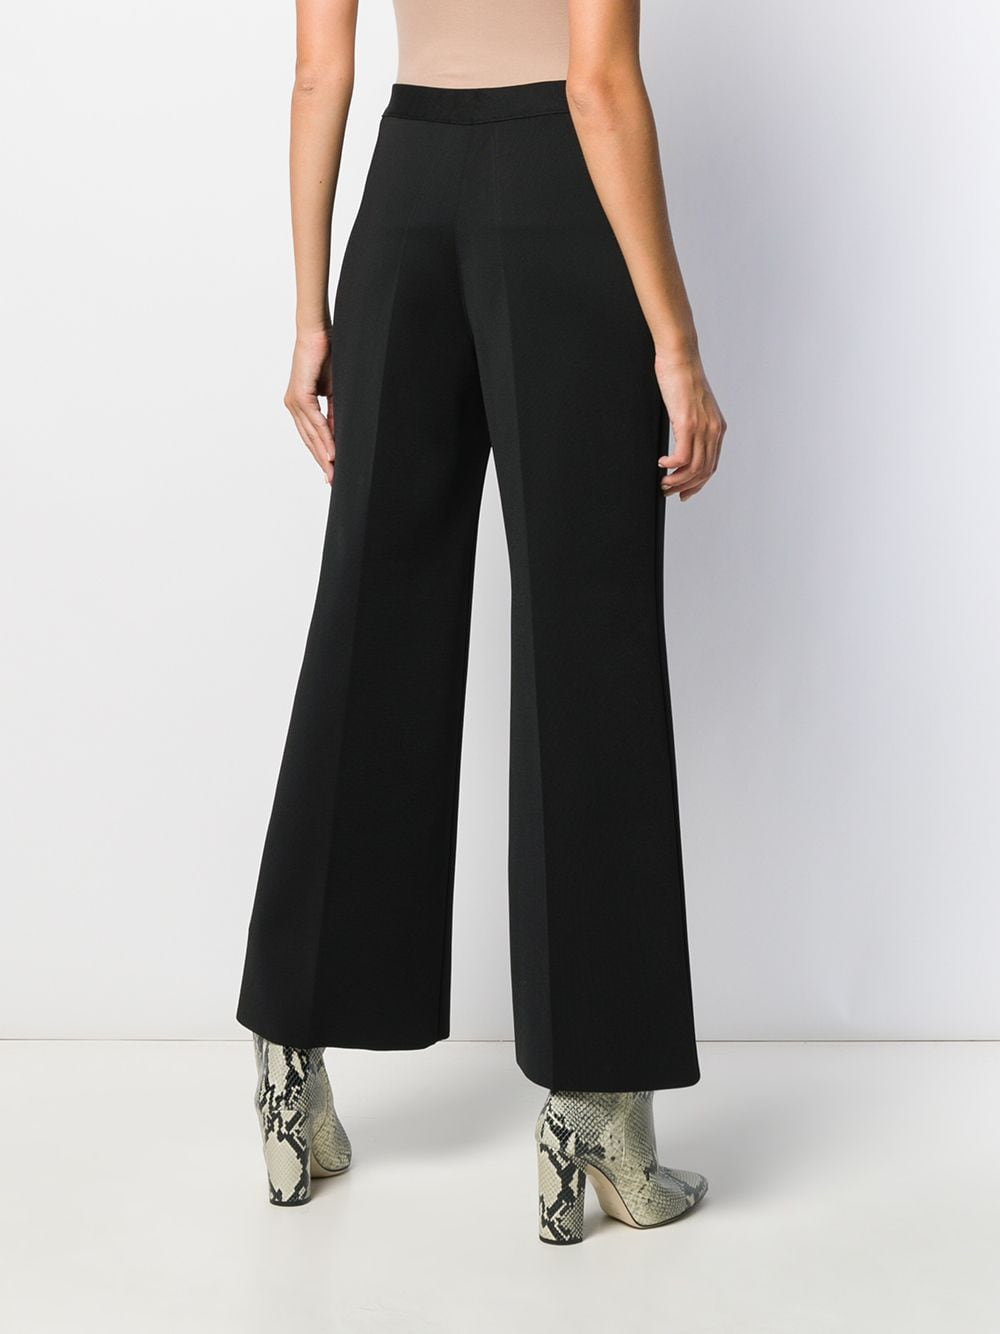 фото Givenchy расклешенные брюки с плетеной отделкой